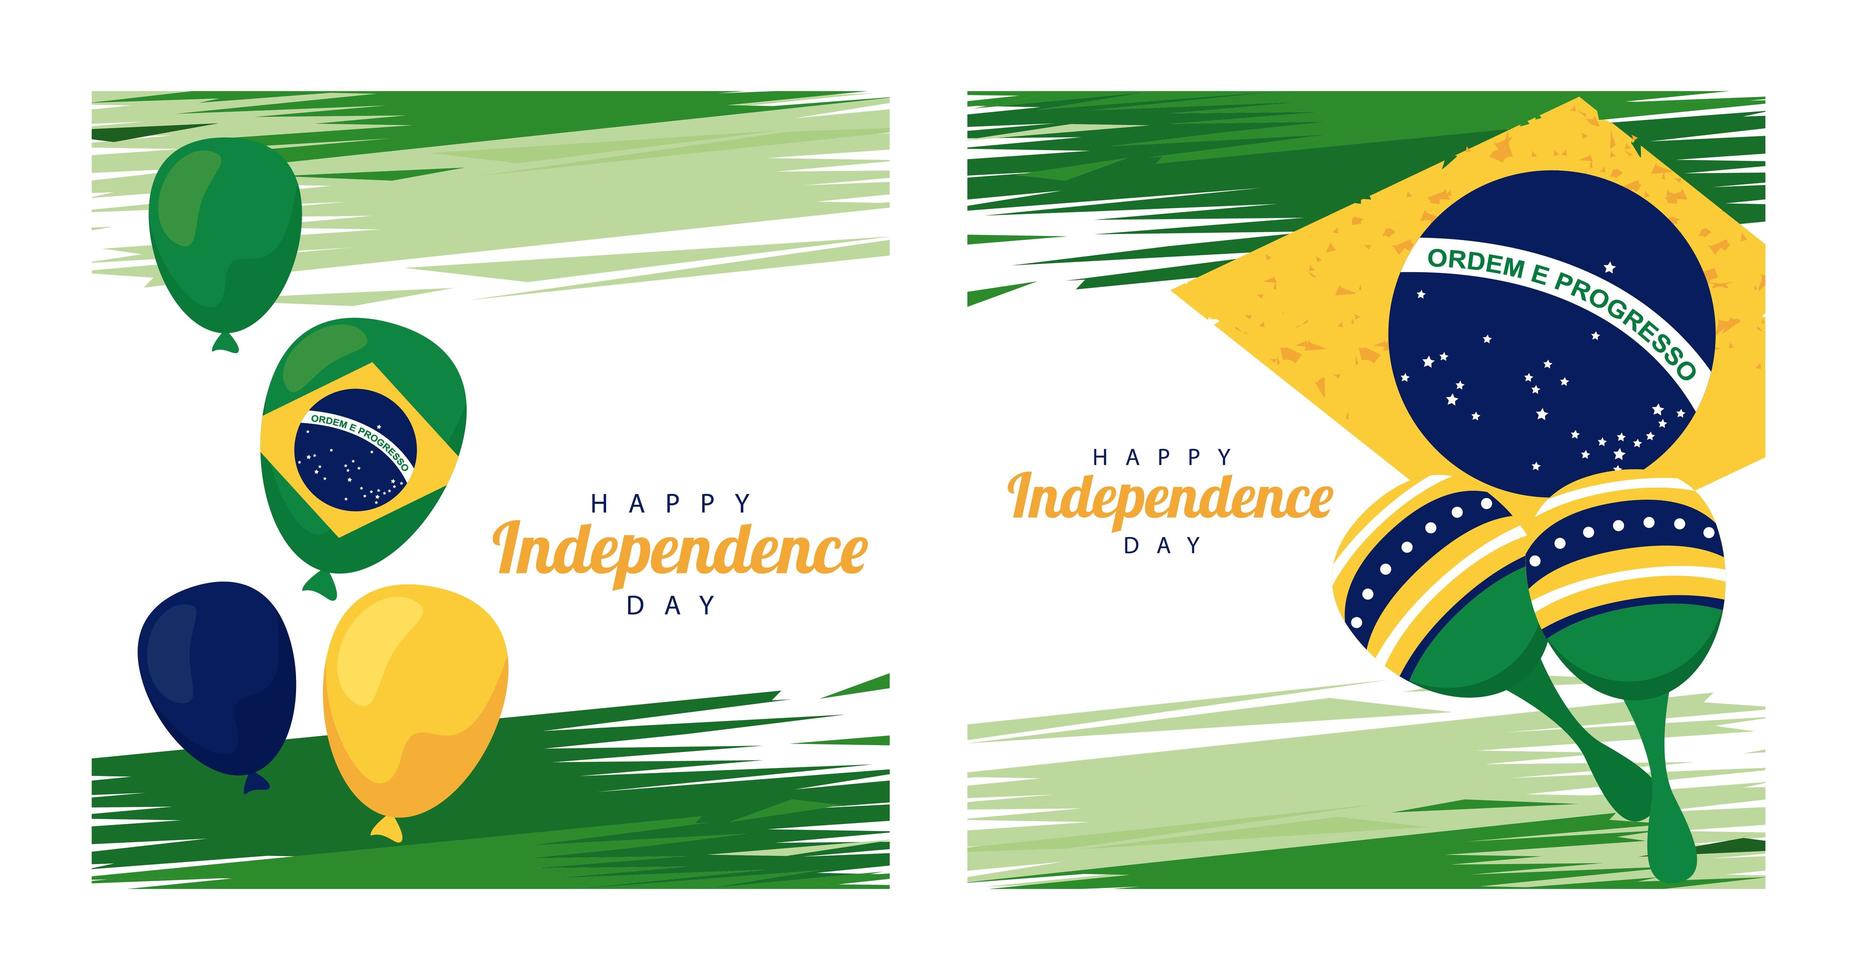 Brésil joyeuse fête de l'indépendance avec des ballons d'hélium et des maracas dans le drapeau vecteur